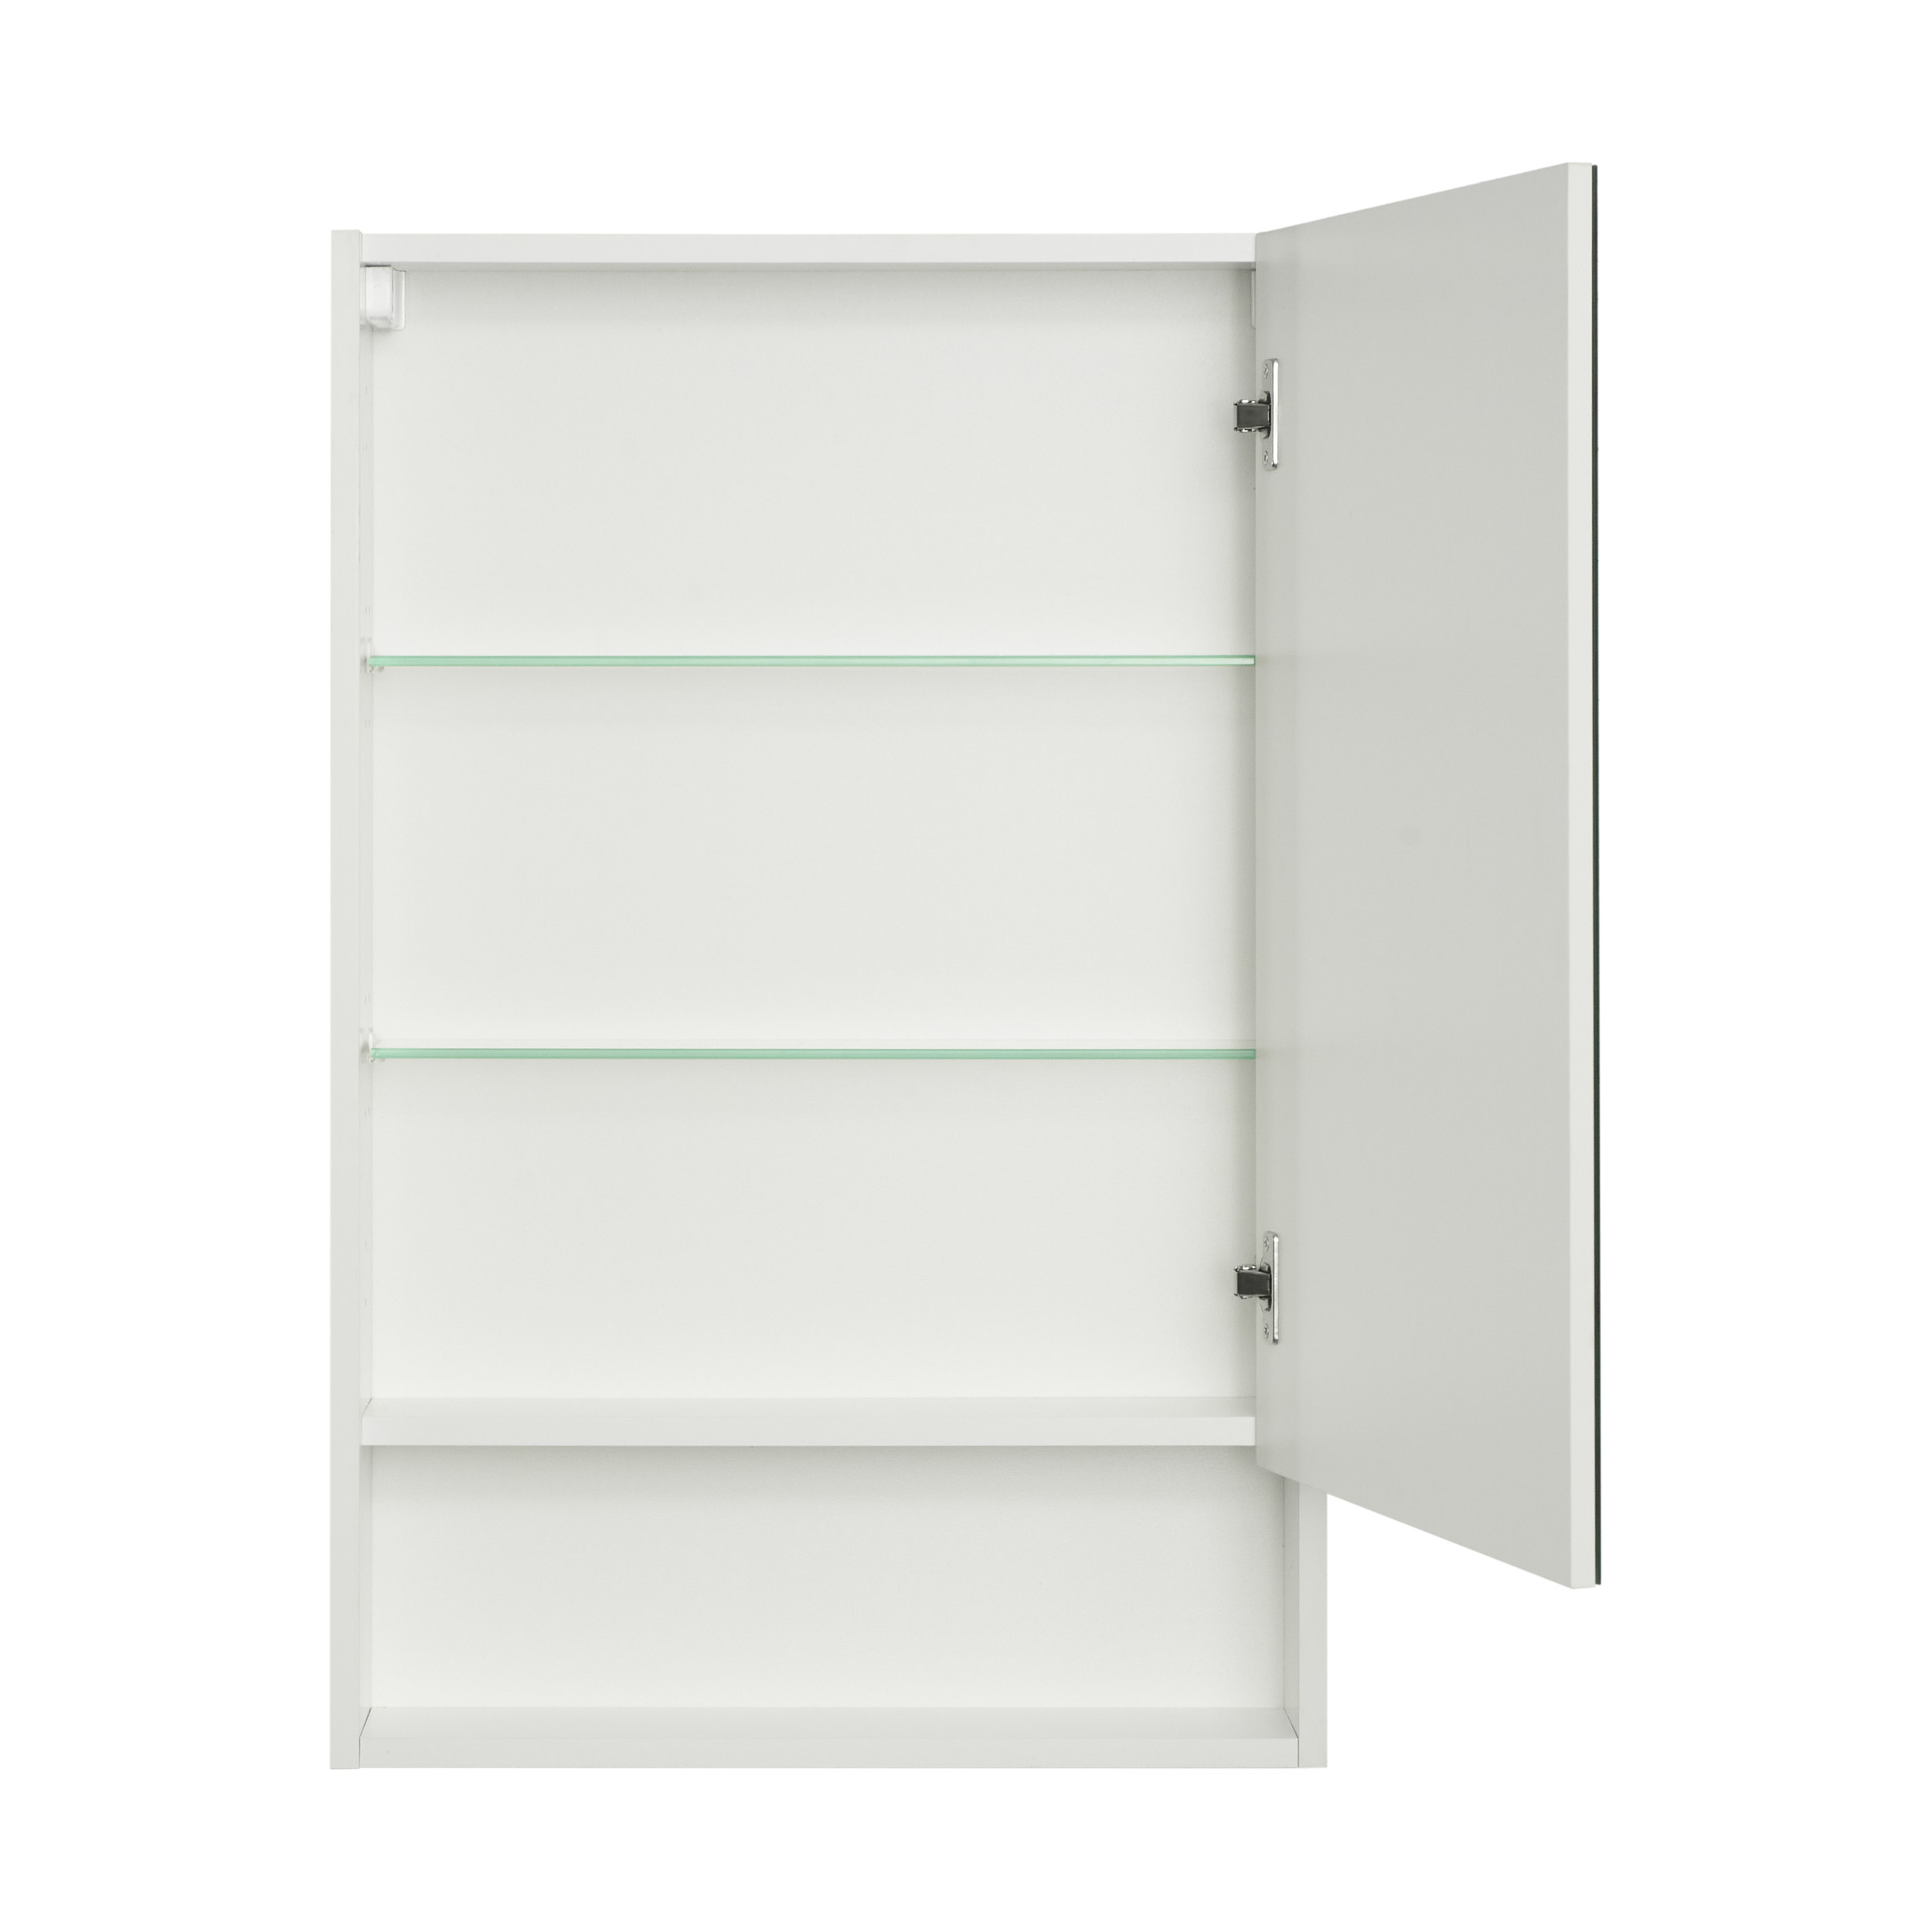 Зеркальный шкаф Aquaton Сканди 55 белый 1A252102SD010